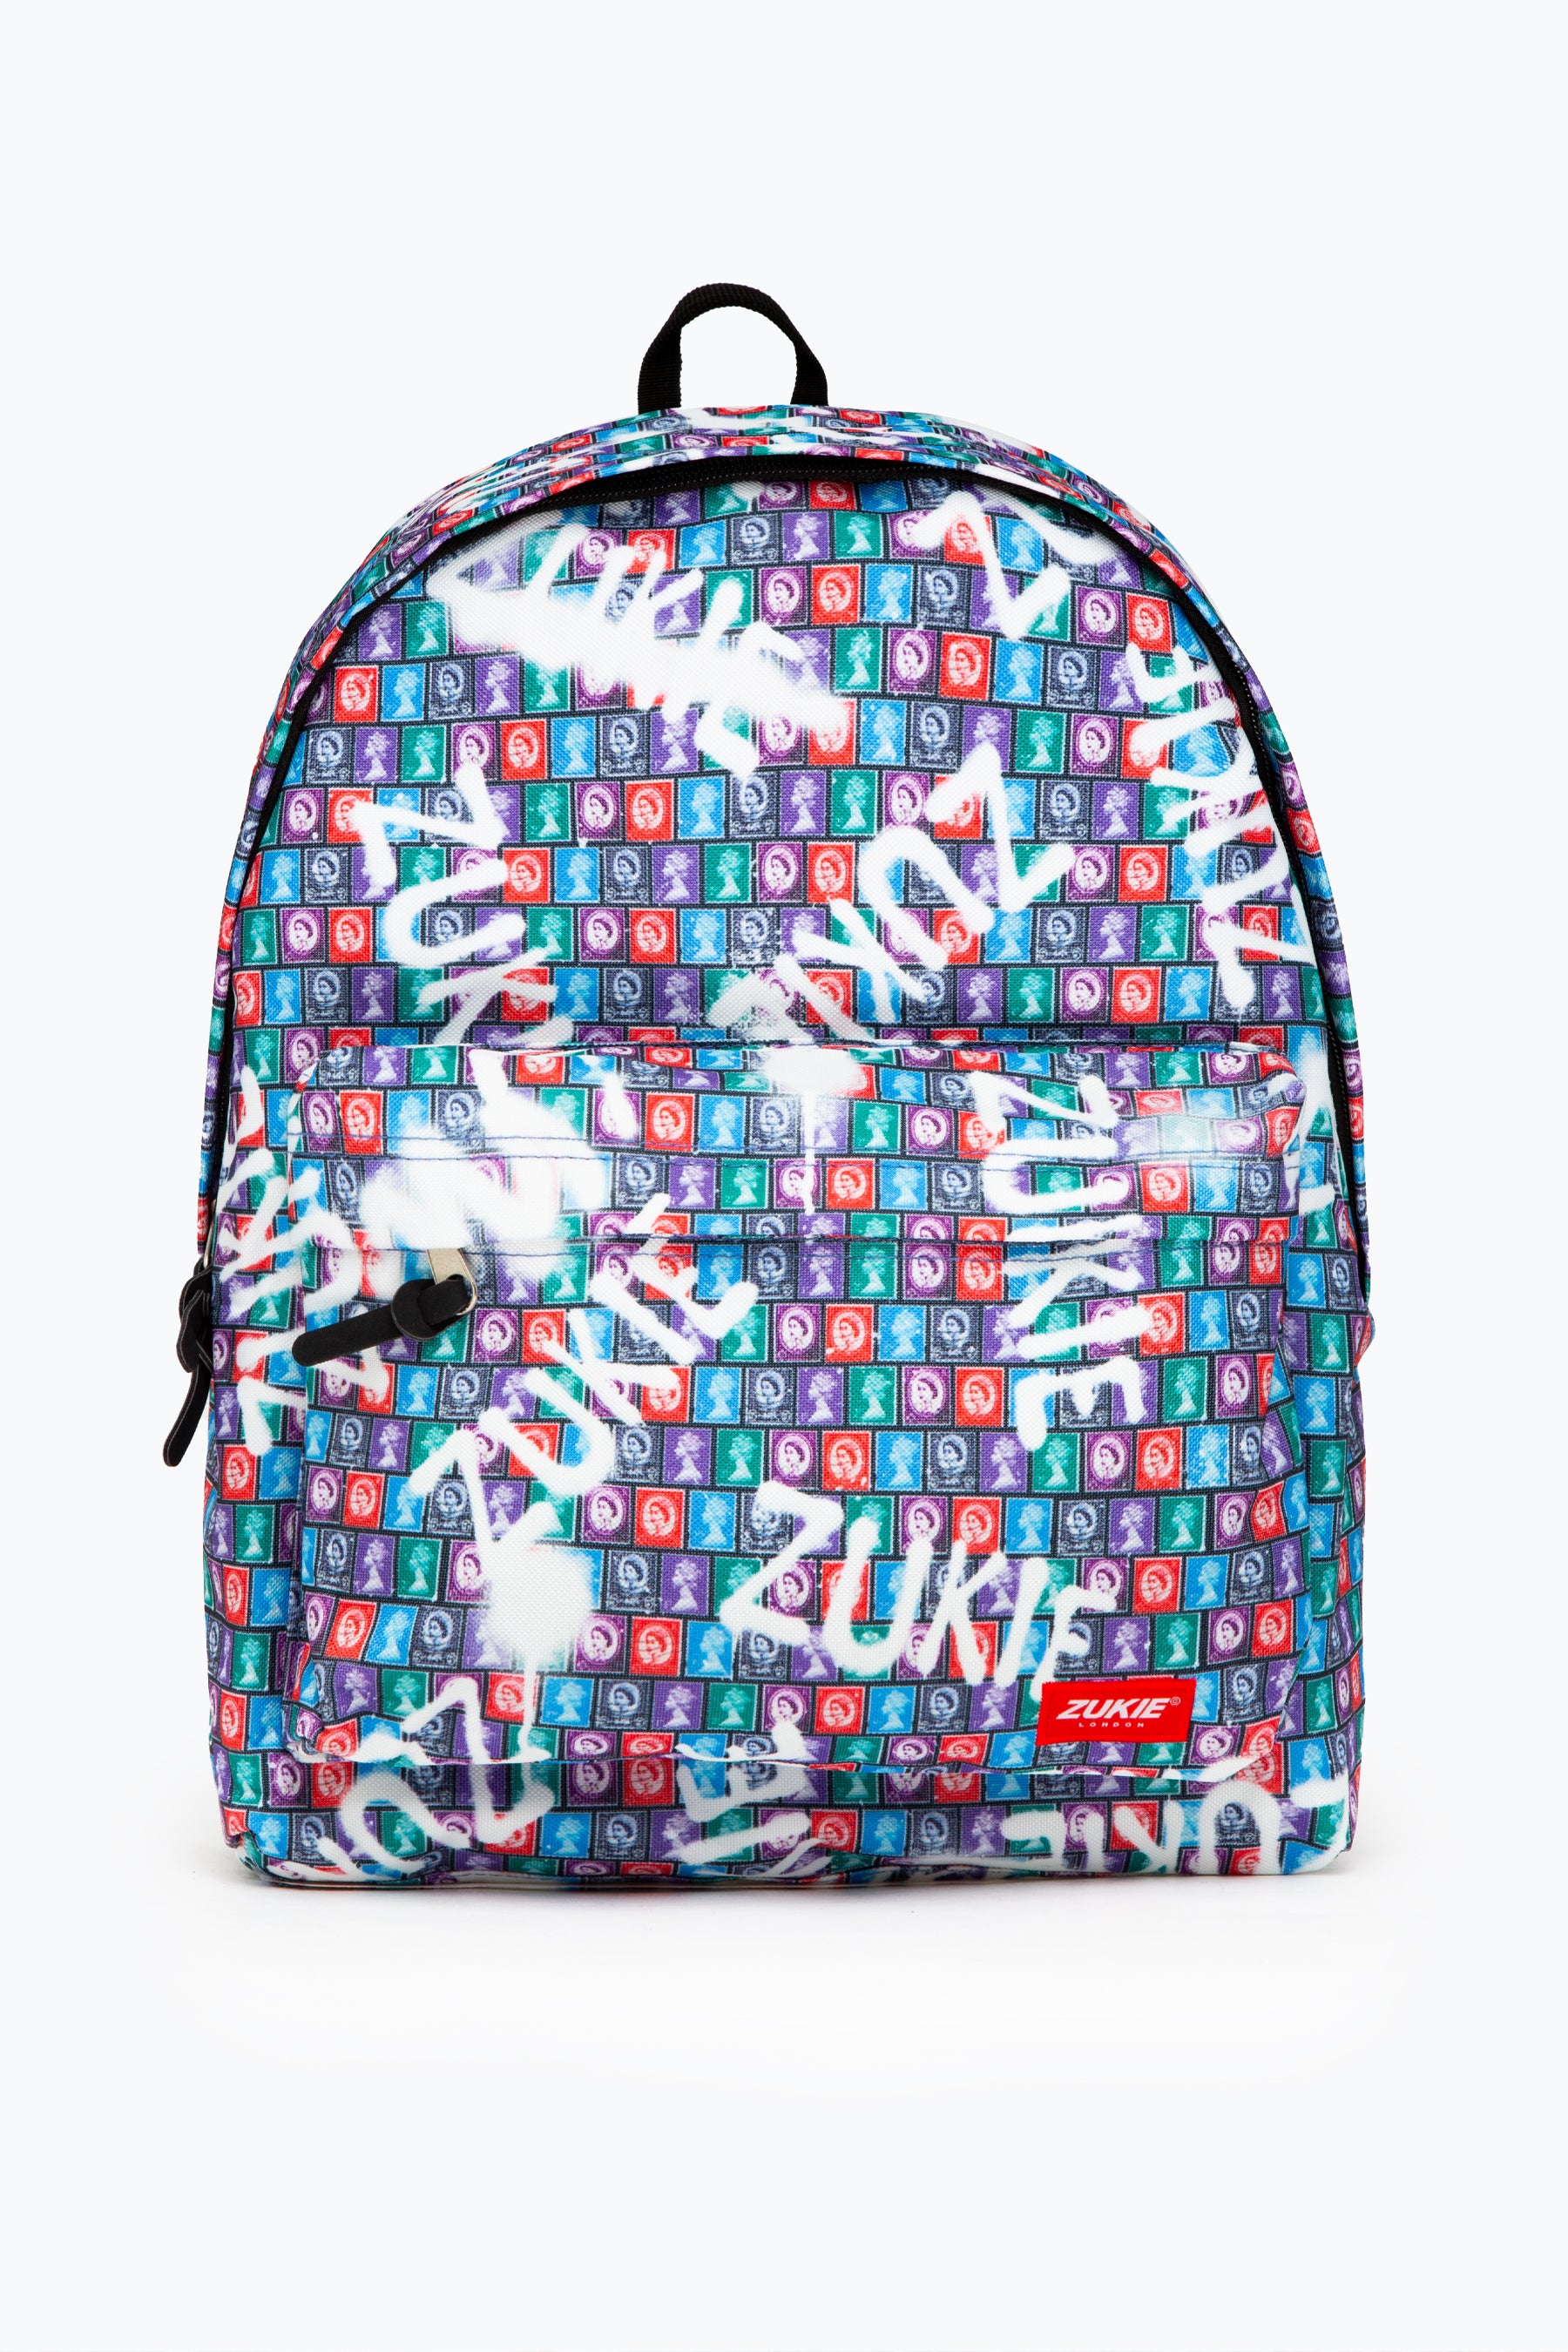 zukie queen lizzy backpack